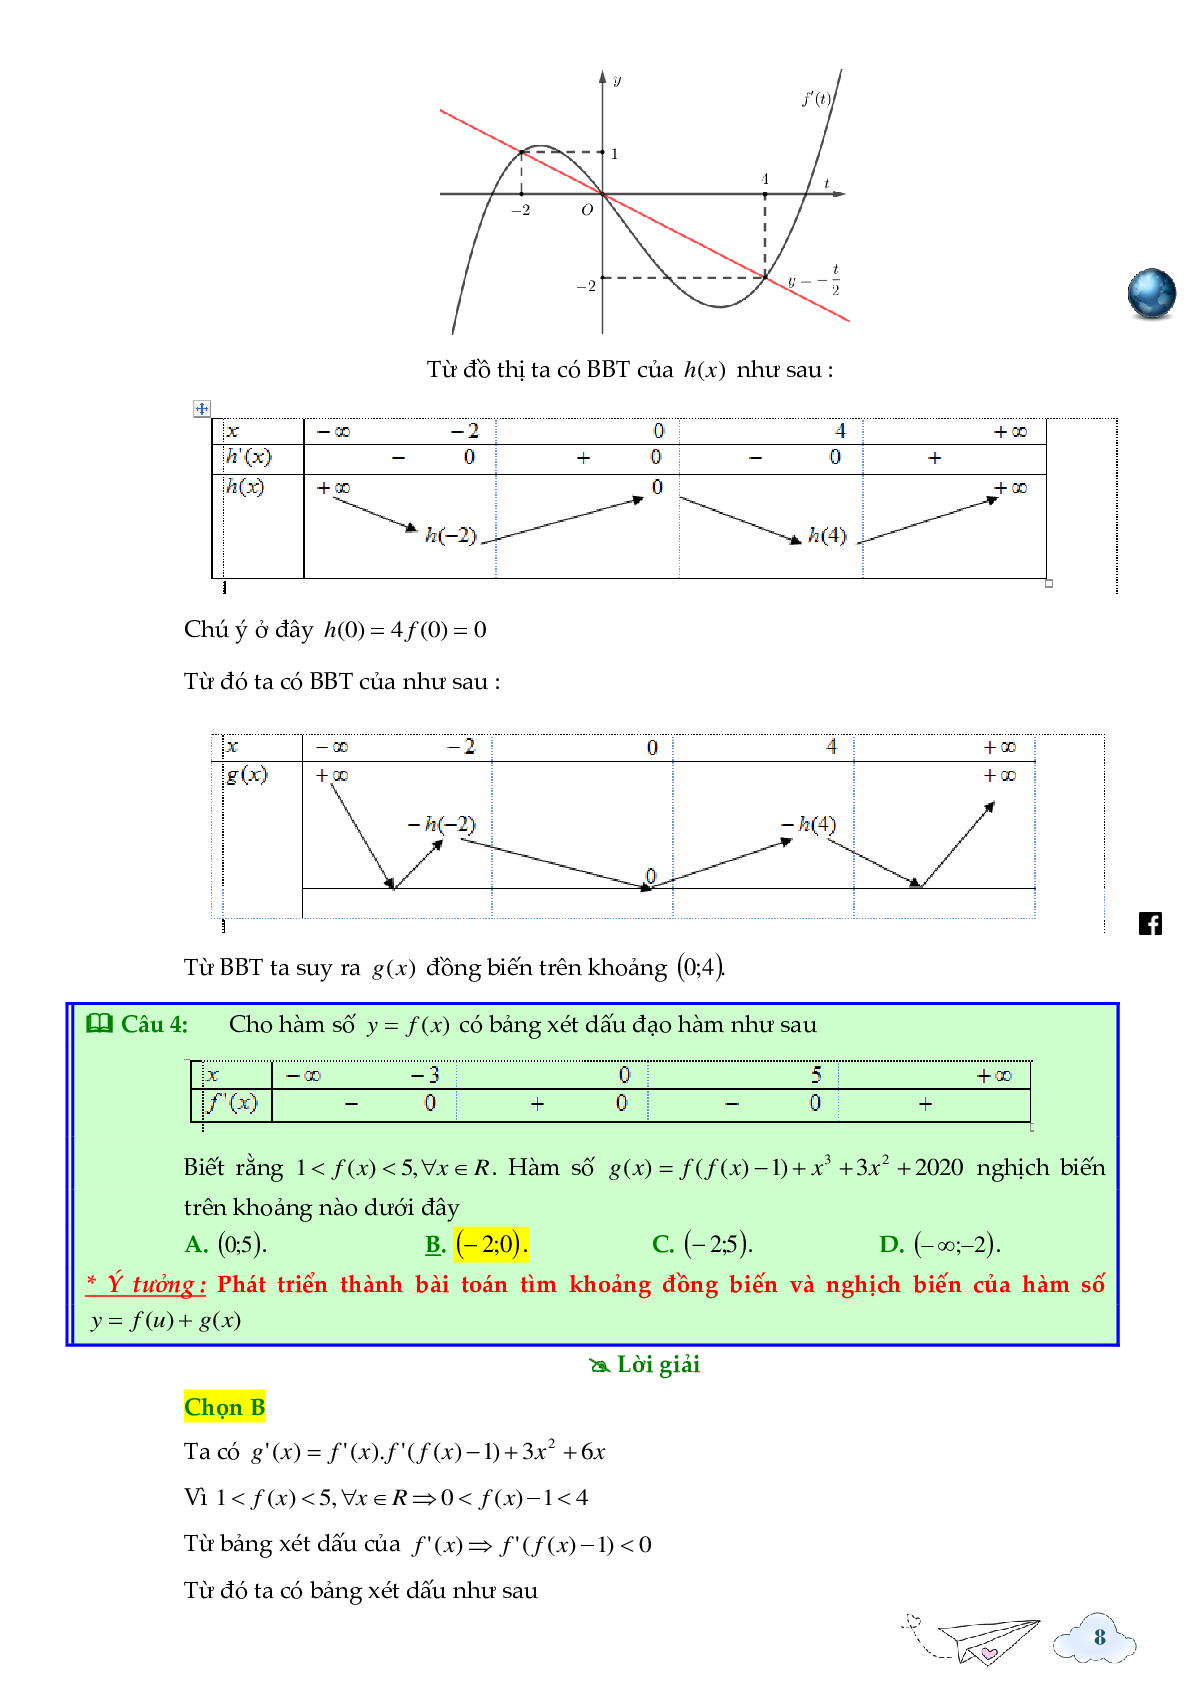 Tính đơn điệu của hàm ẩn được cho bởi đồ thị hàm f'(x) (trang 8)